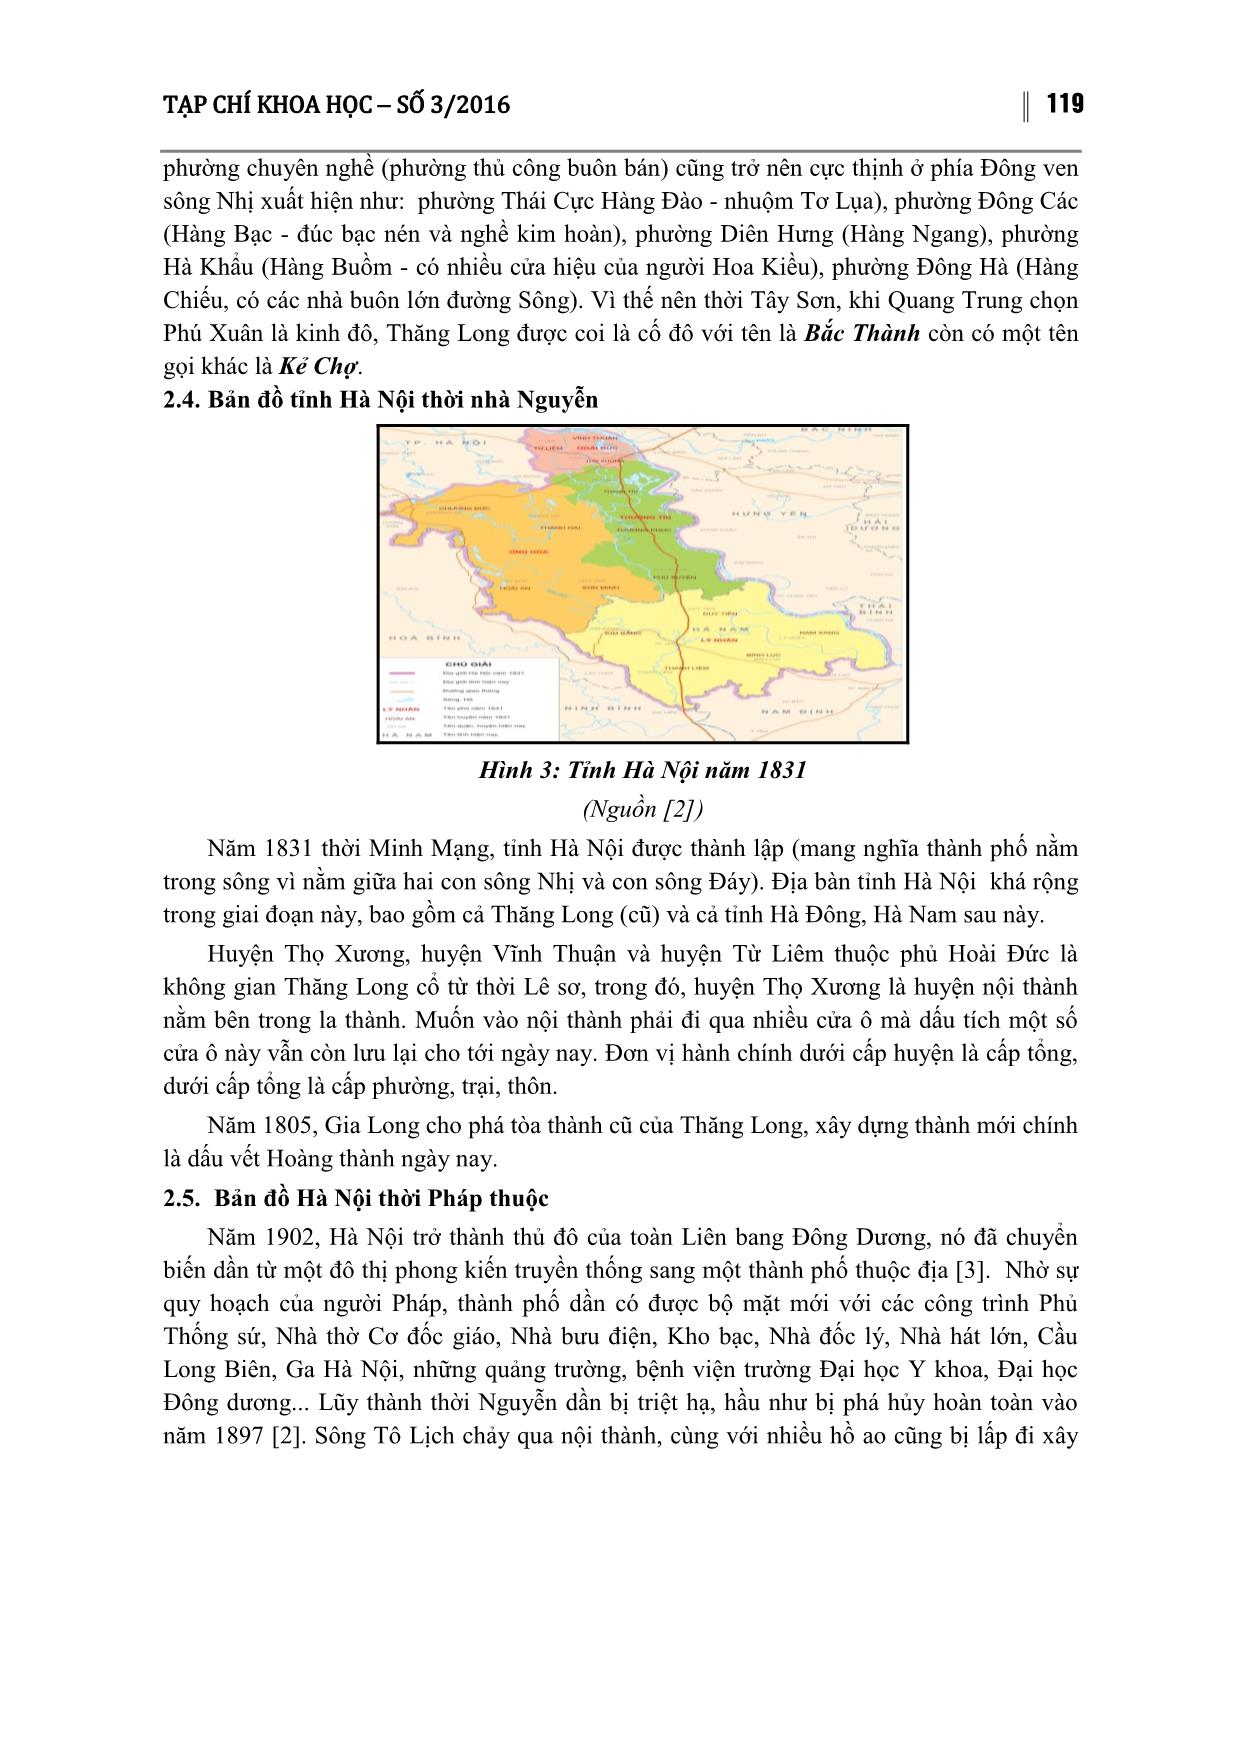 Biến động địa giới thành phố Hà Nội qua các thời kỳ lịch sử trang 4